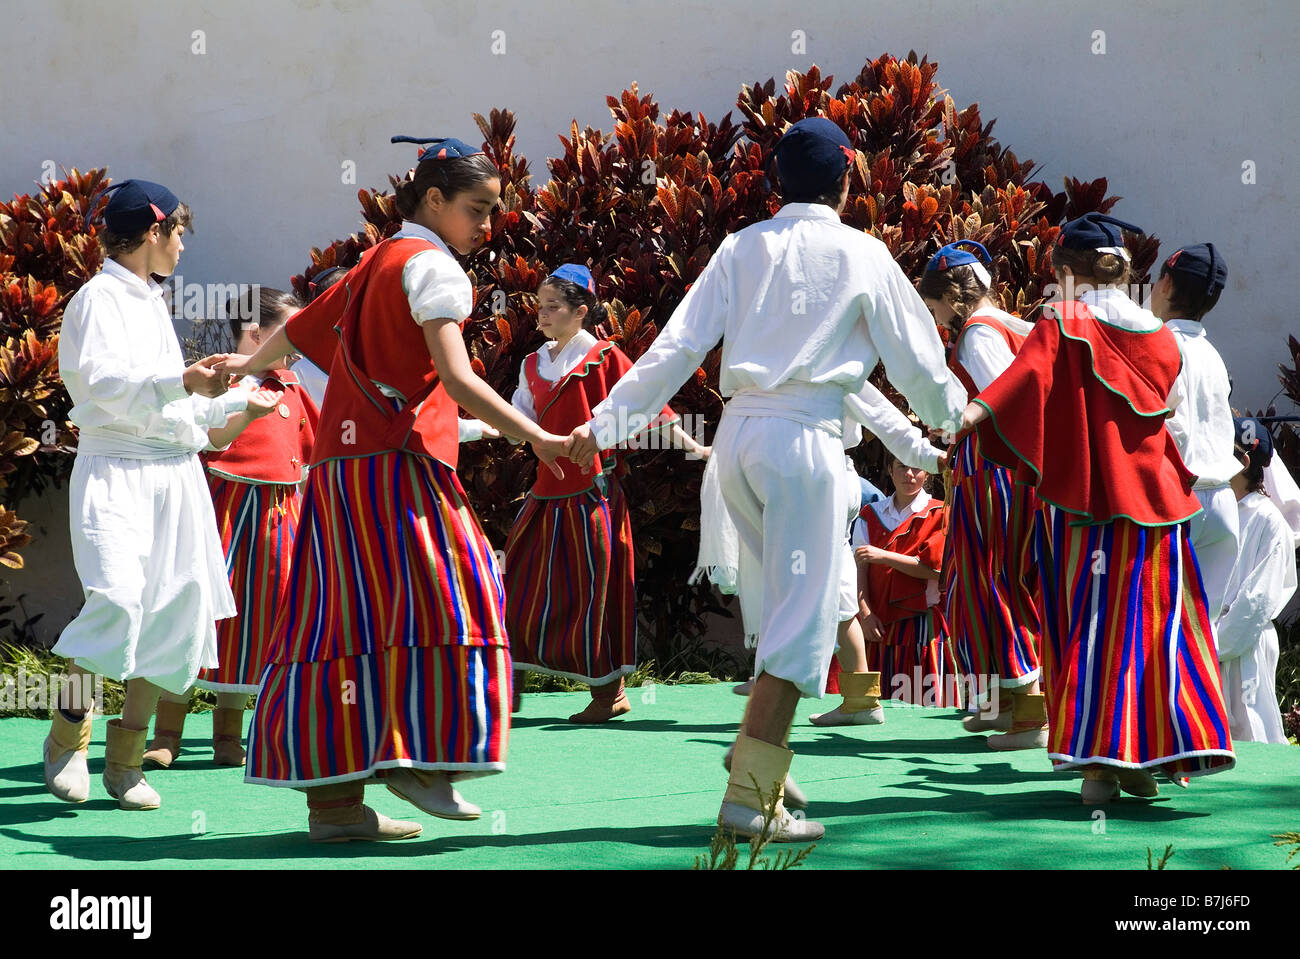 dh Fiore Festival FUNCHAL MADEIRA Bambini tradizionale costume danza spettacolo portogallo folk danza nazionale tradizione personalizzata ragazzi ballerini esecuzione Foto Stock